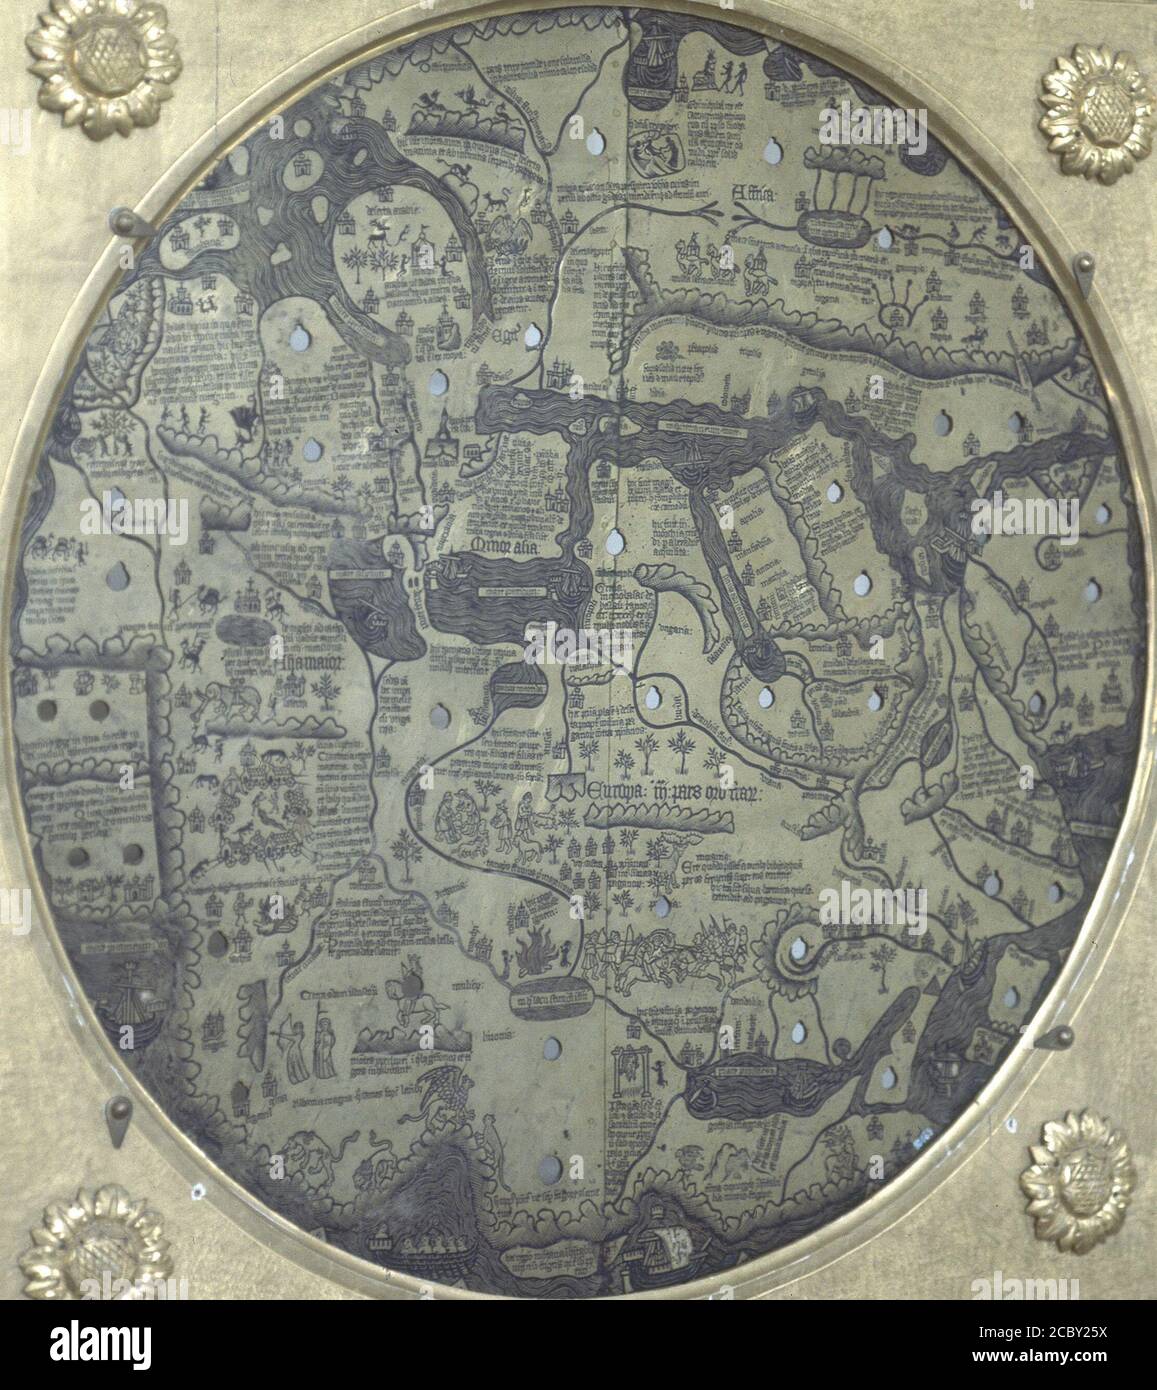 MAPAMUNDI BORGIANO - (1410-1458) - GRABADO EN UNA PLANCHA METALICA. LIEU: MUSEOS VATICANOS-GALERIA DE LOS MAPAS. VATICAN. Banque D'Images